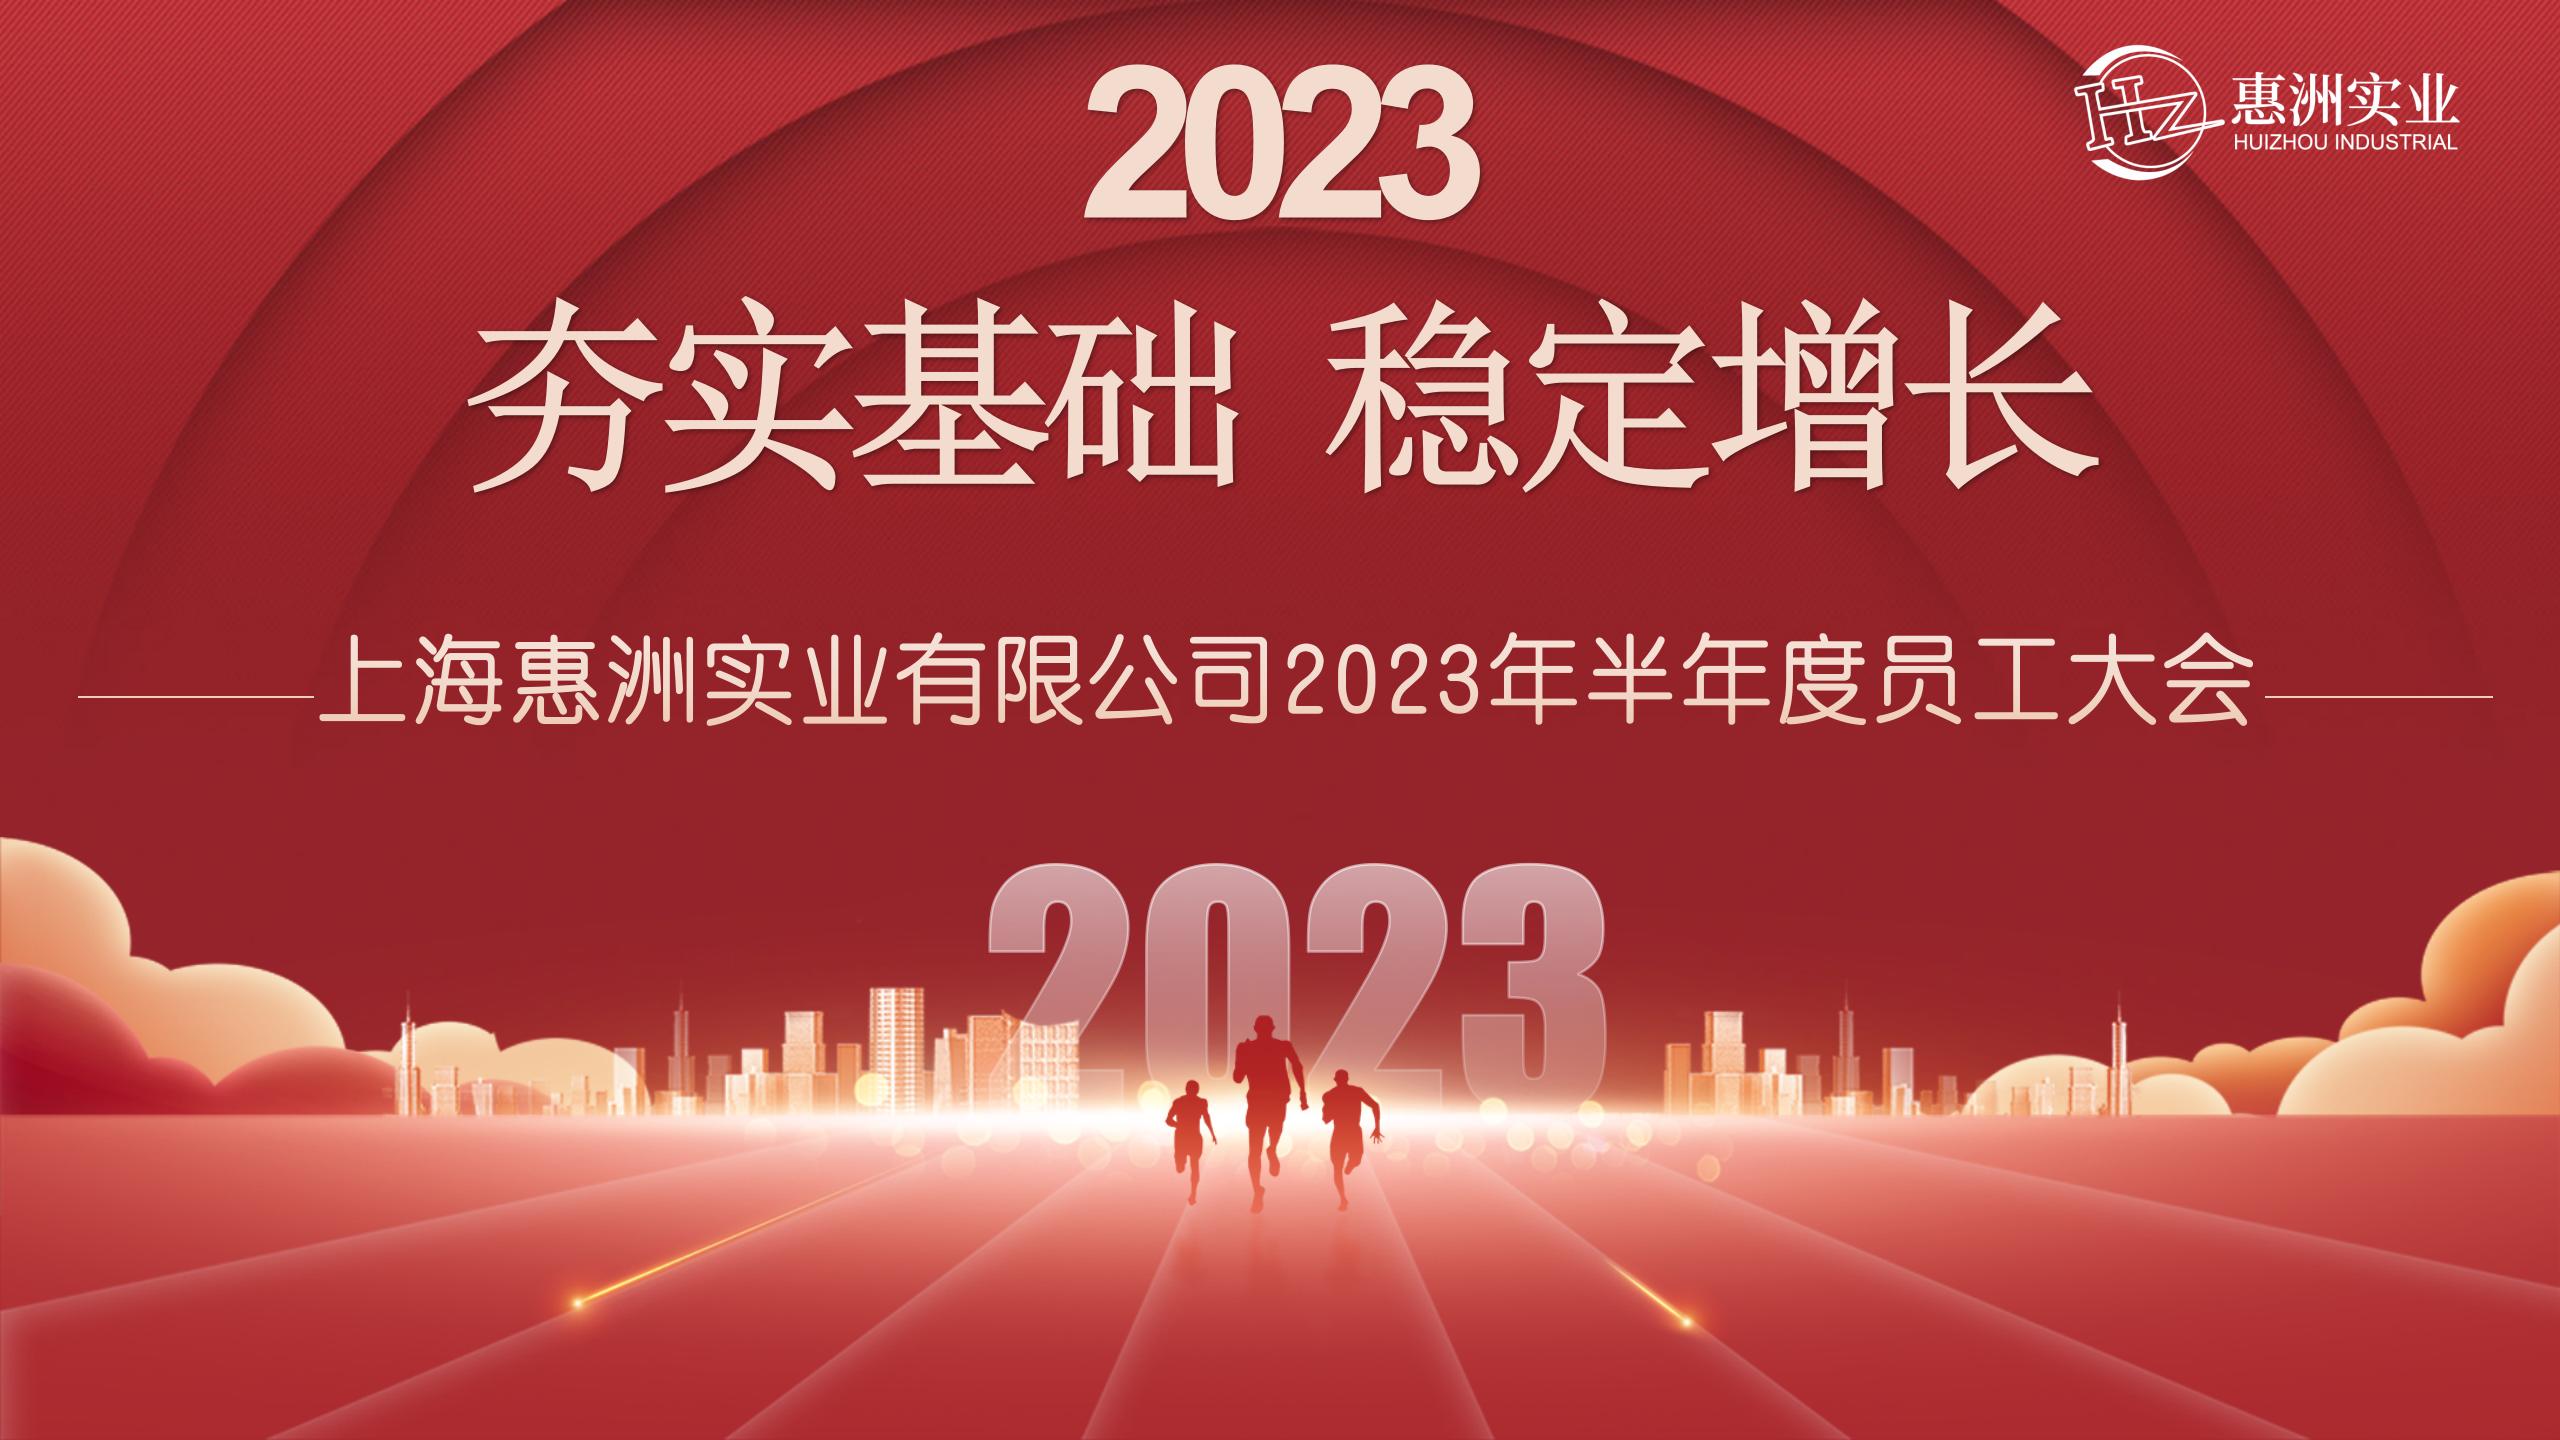 Піврічна зустріч персоналу в Хуйчжоу 2023 р